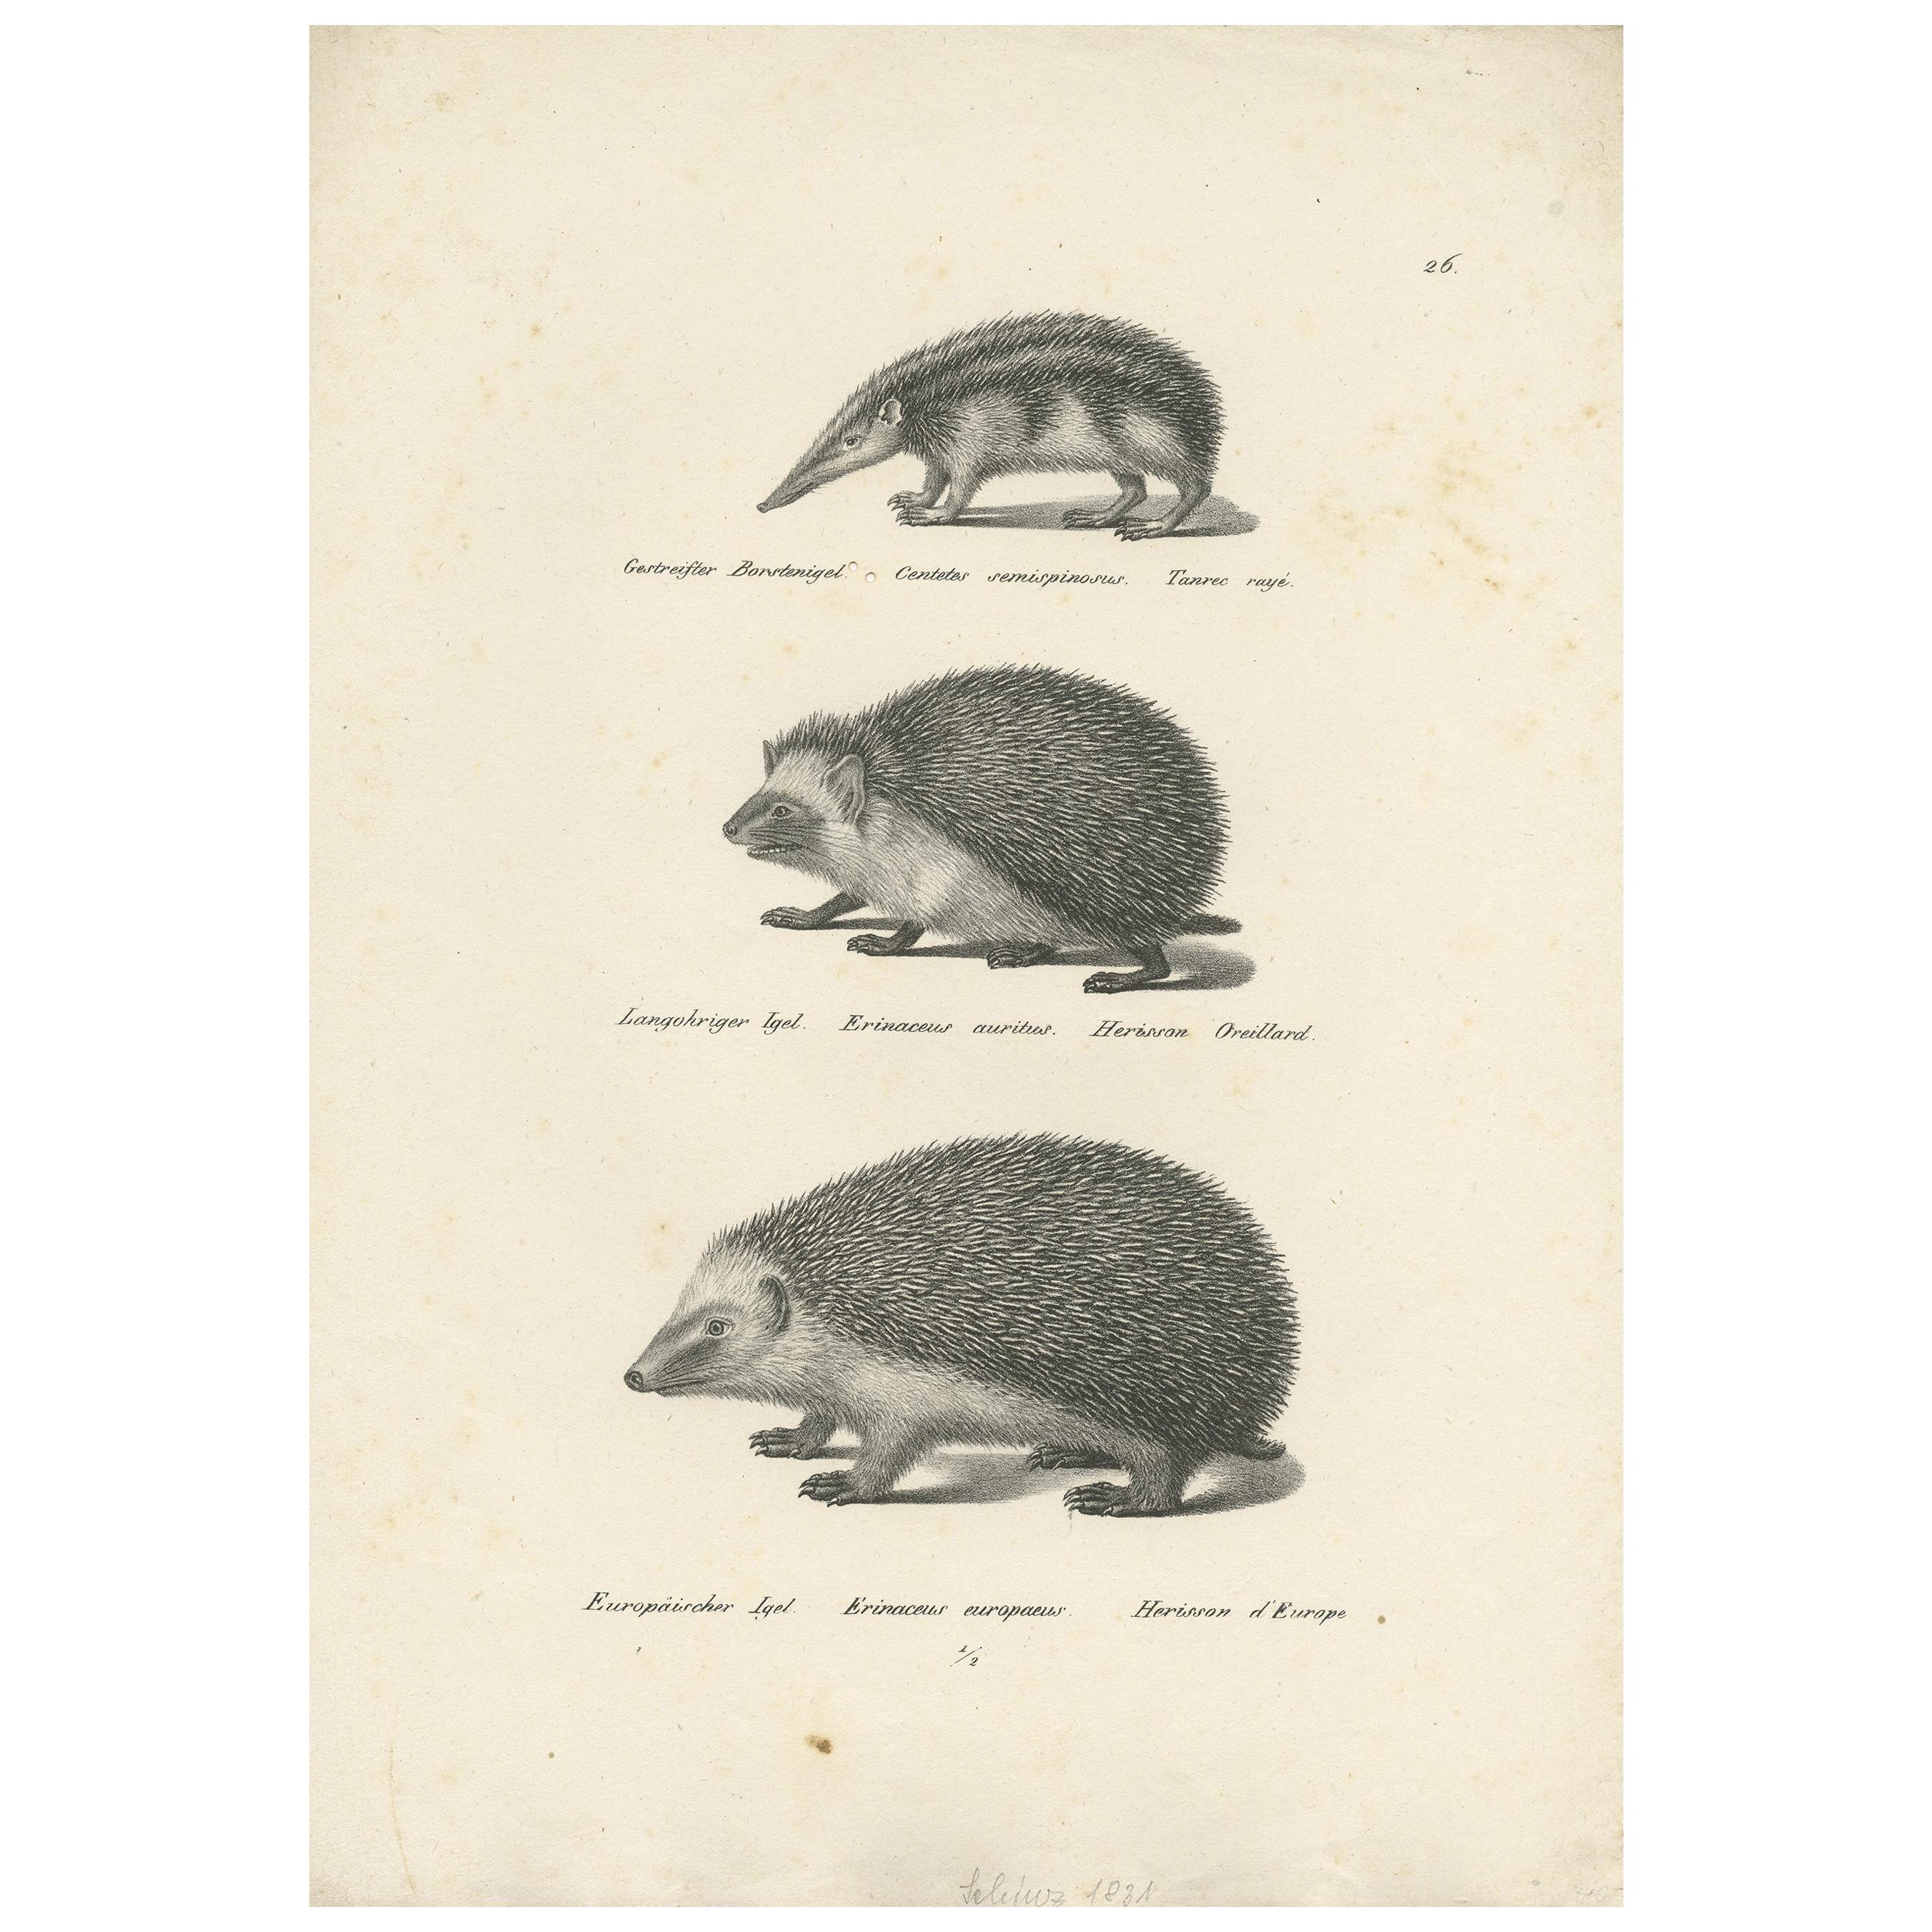 Impression ancienne de Hedgehogs, vers 1830